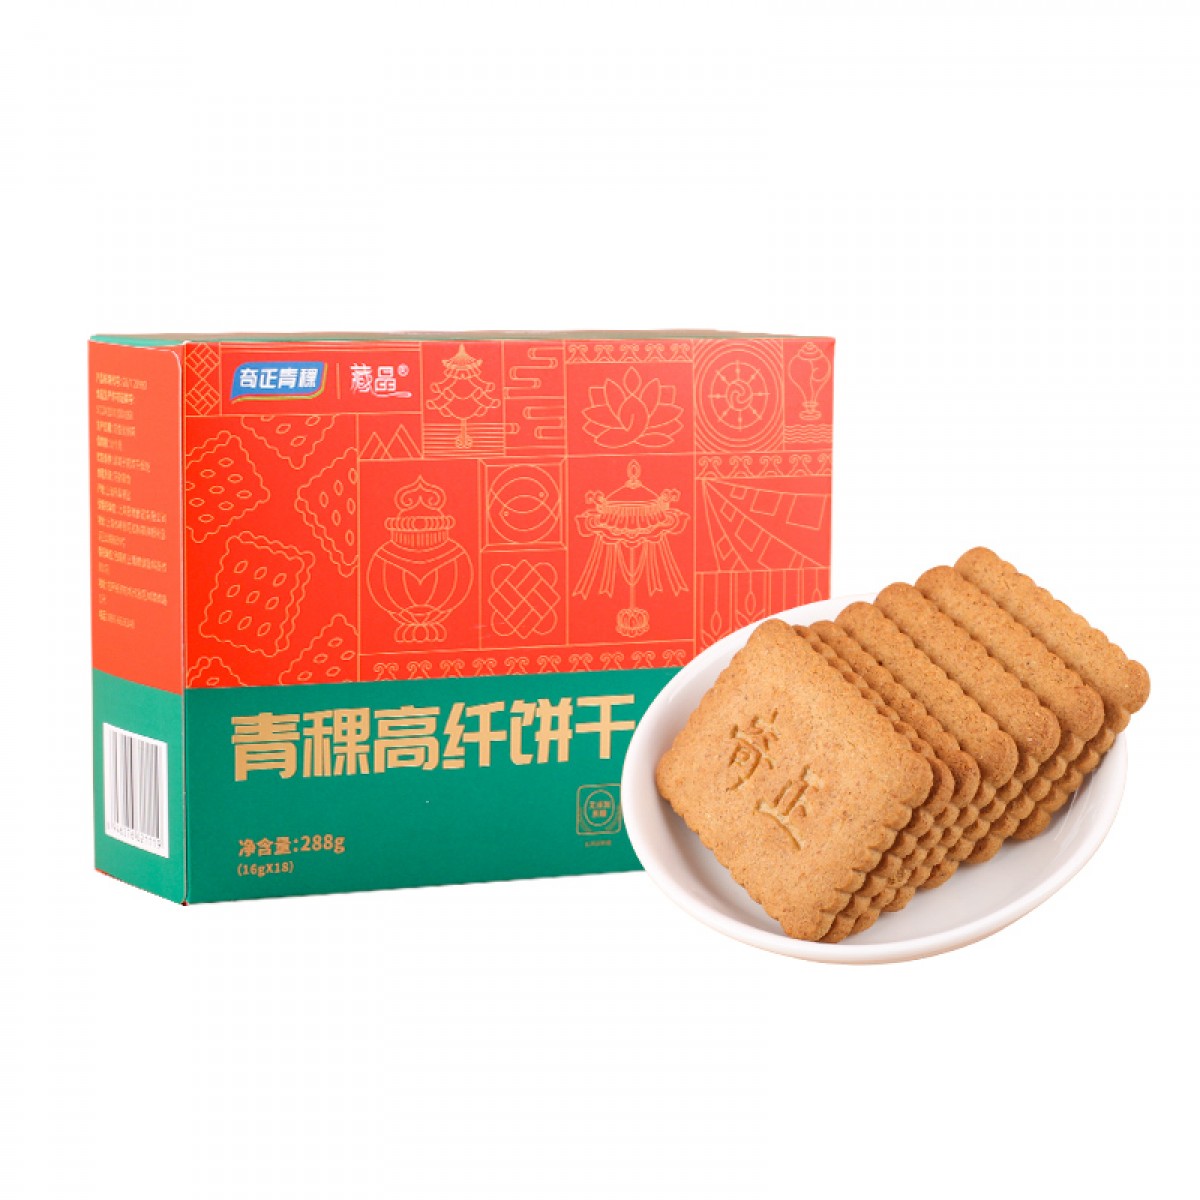 奇正青稞青稞高纤饼干288g/盒*2